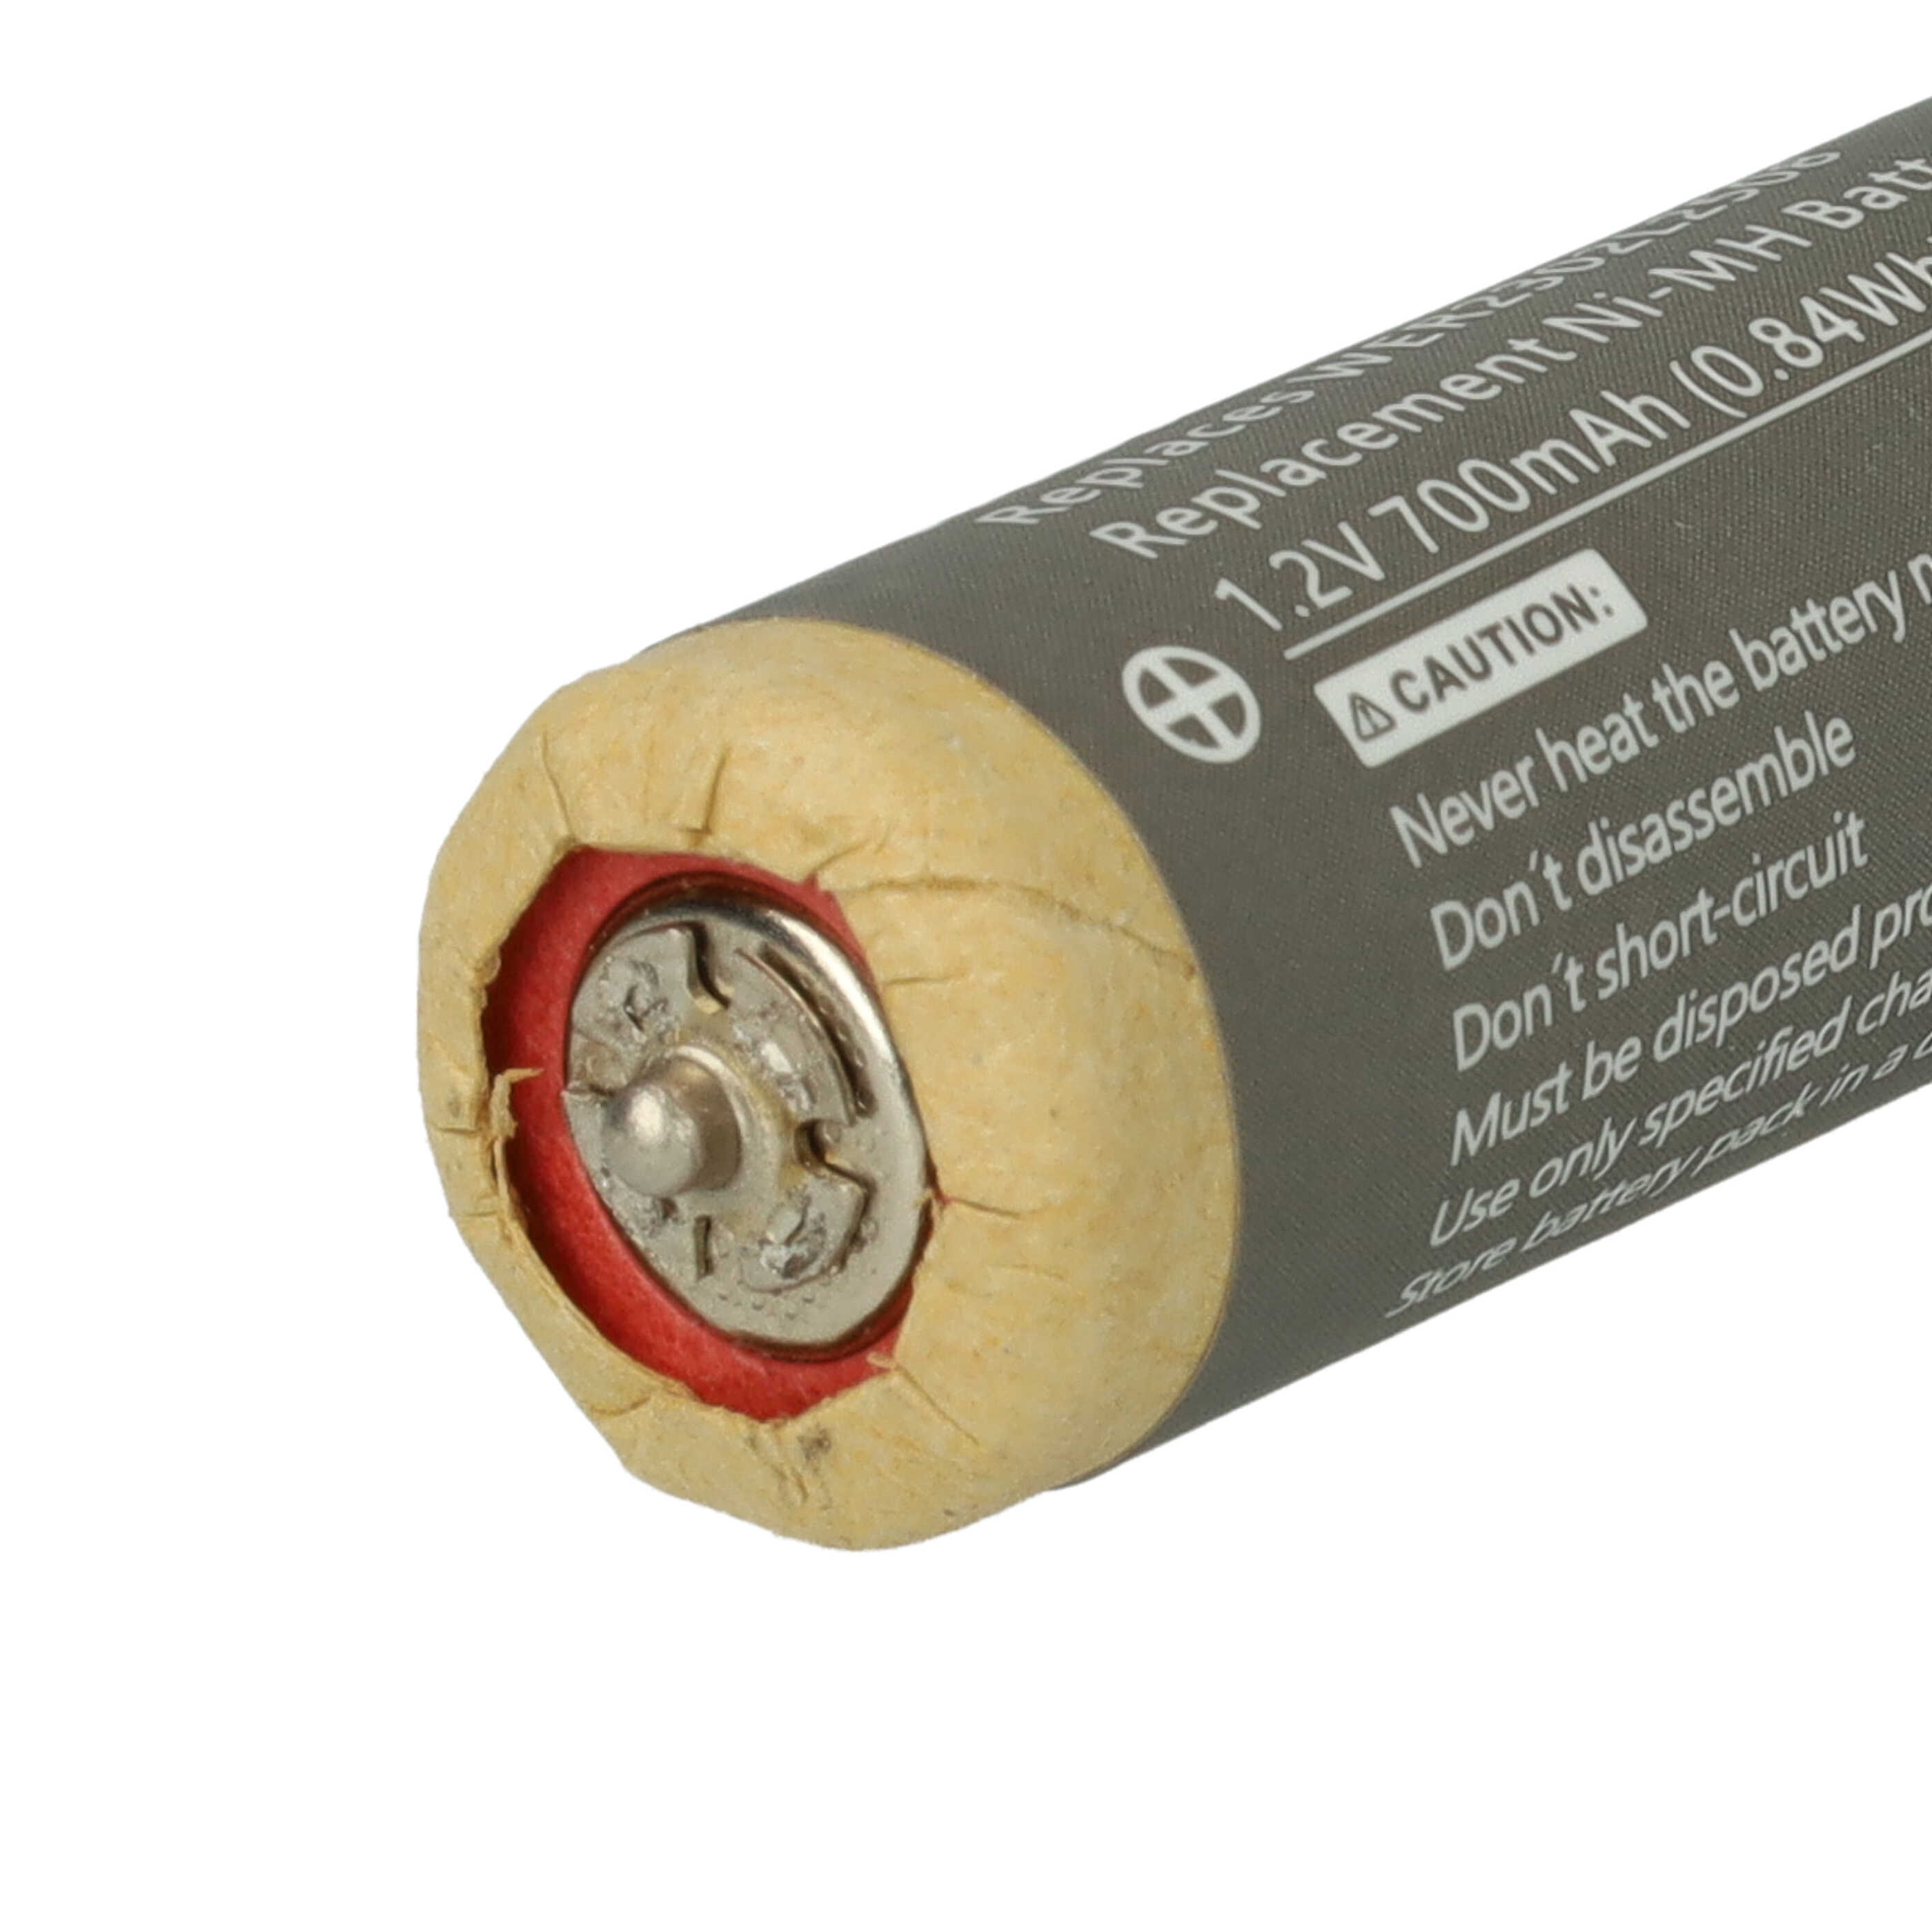 Batterie remplace Panasonic WER2302L2508 pour rasoir électrique - 700mAh 1,2V NiMH